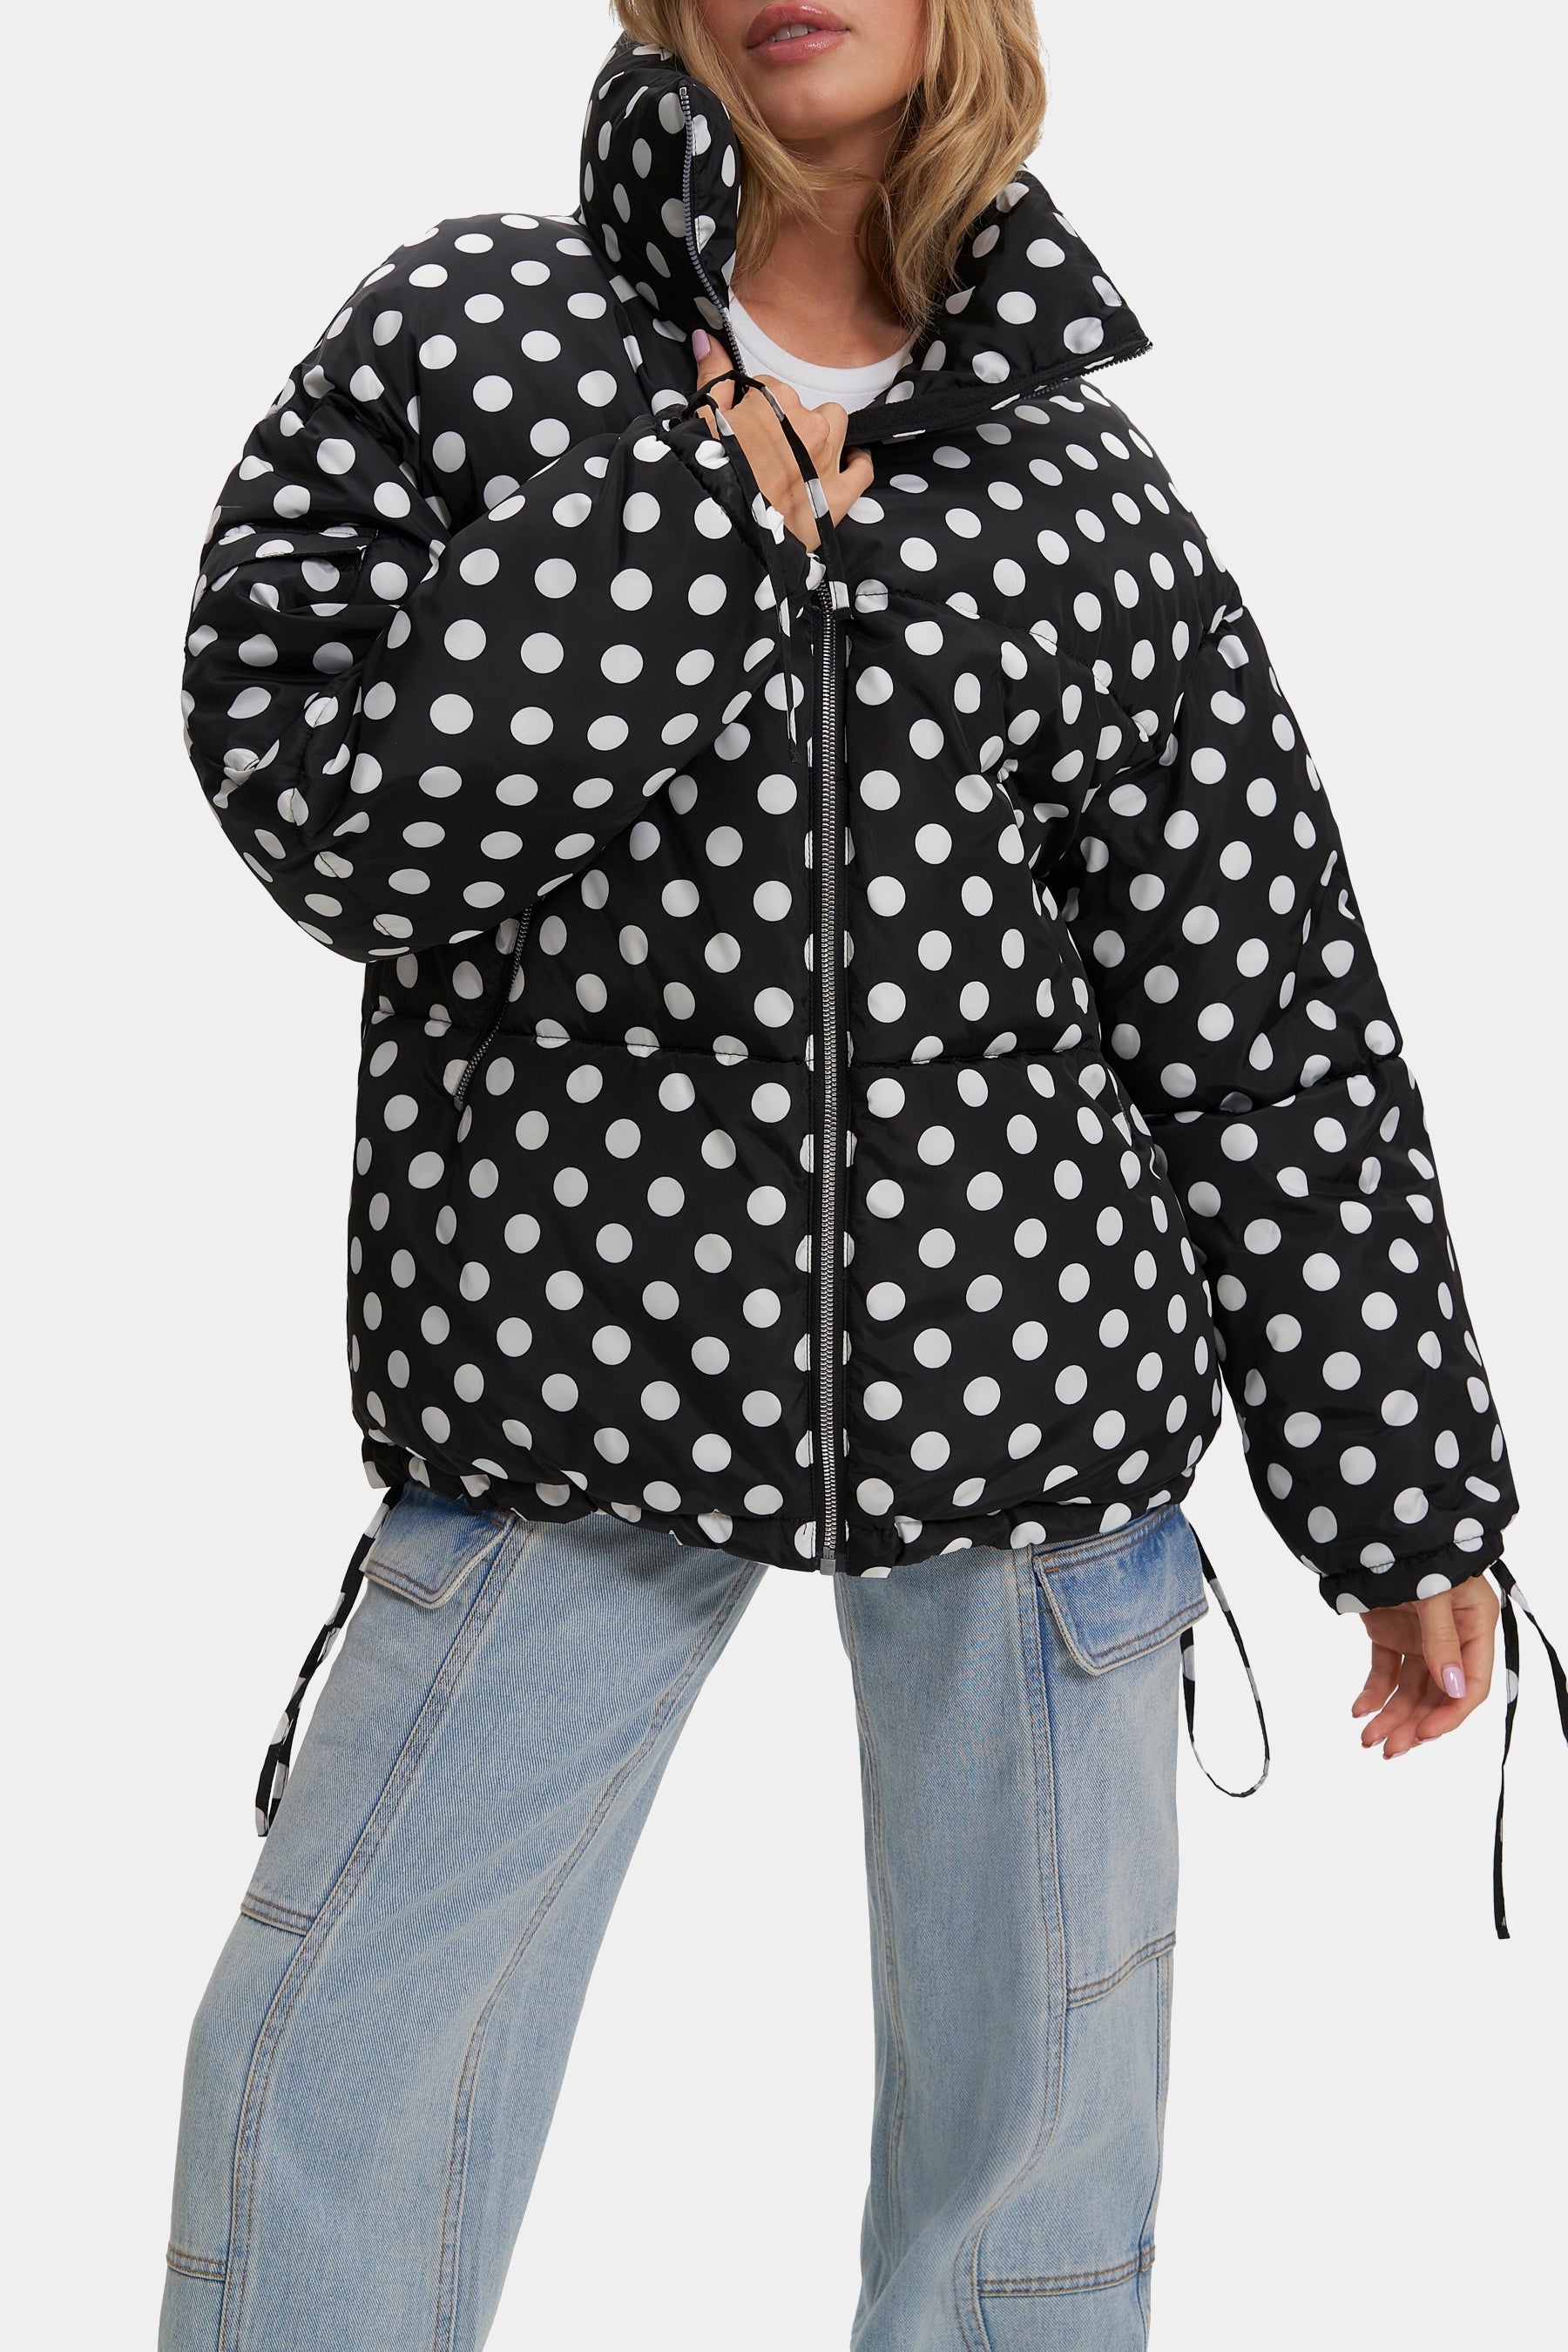 Noize Alejandra Mixed Media Puffer Jacket in Black